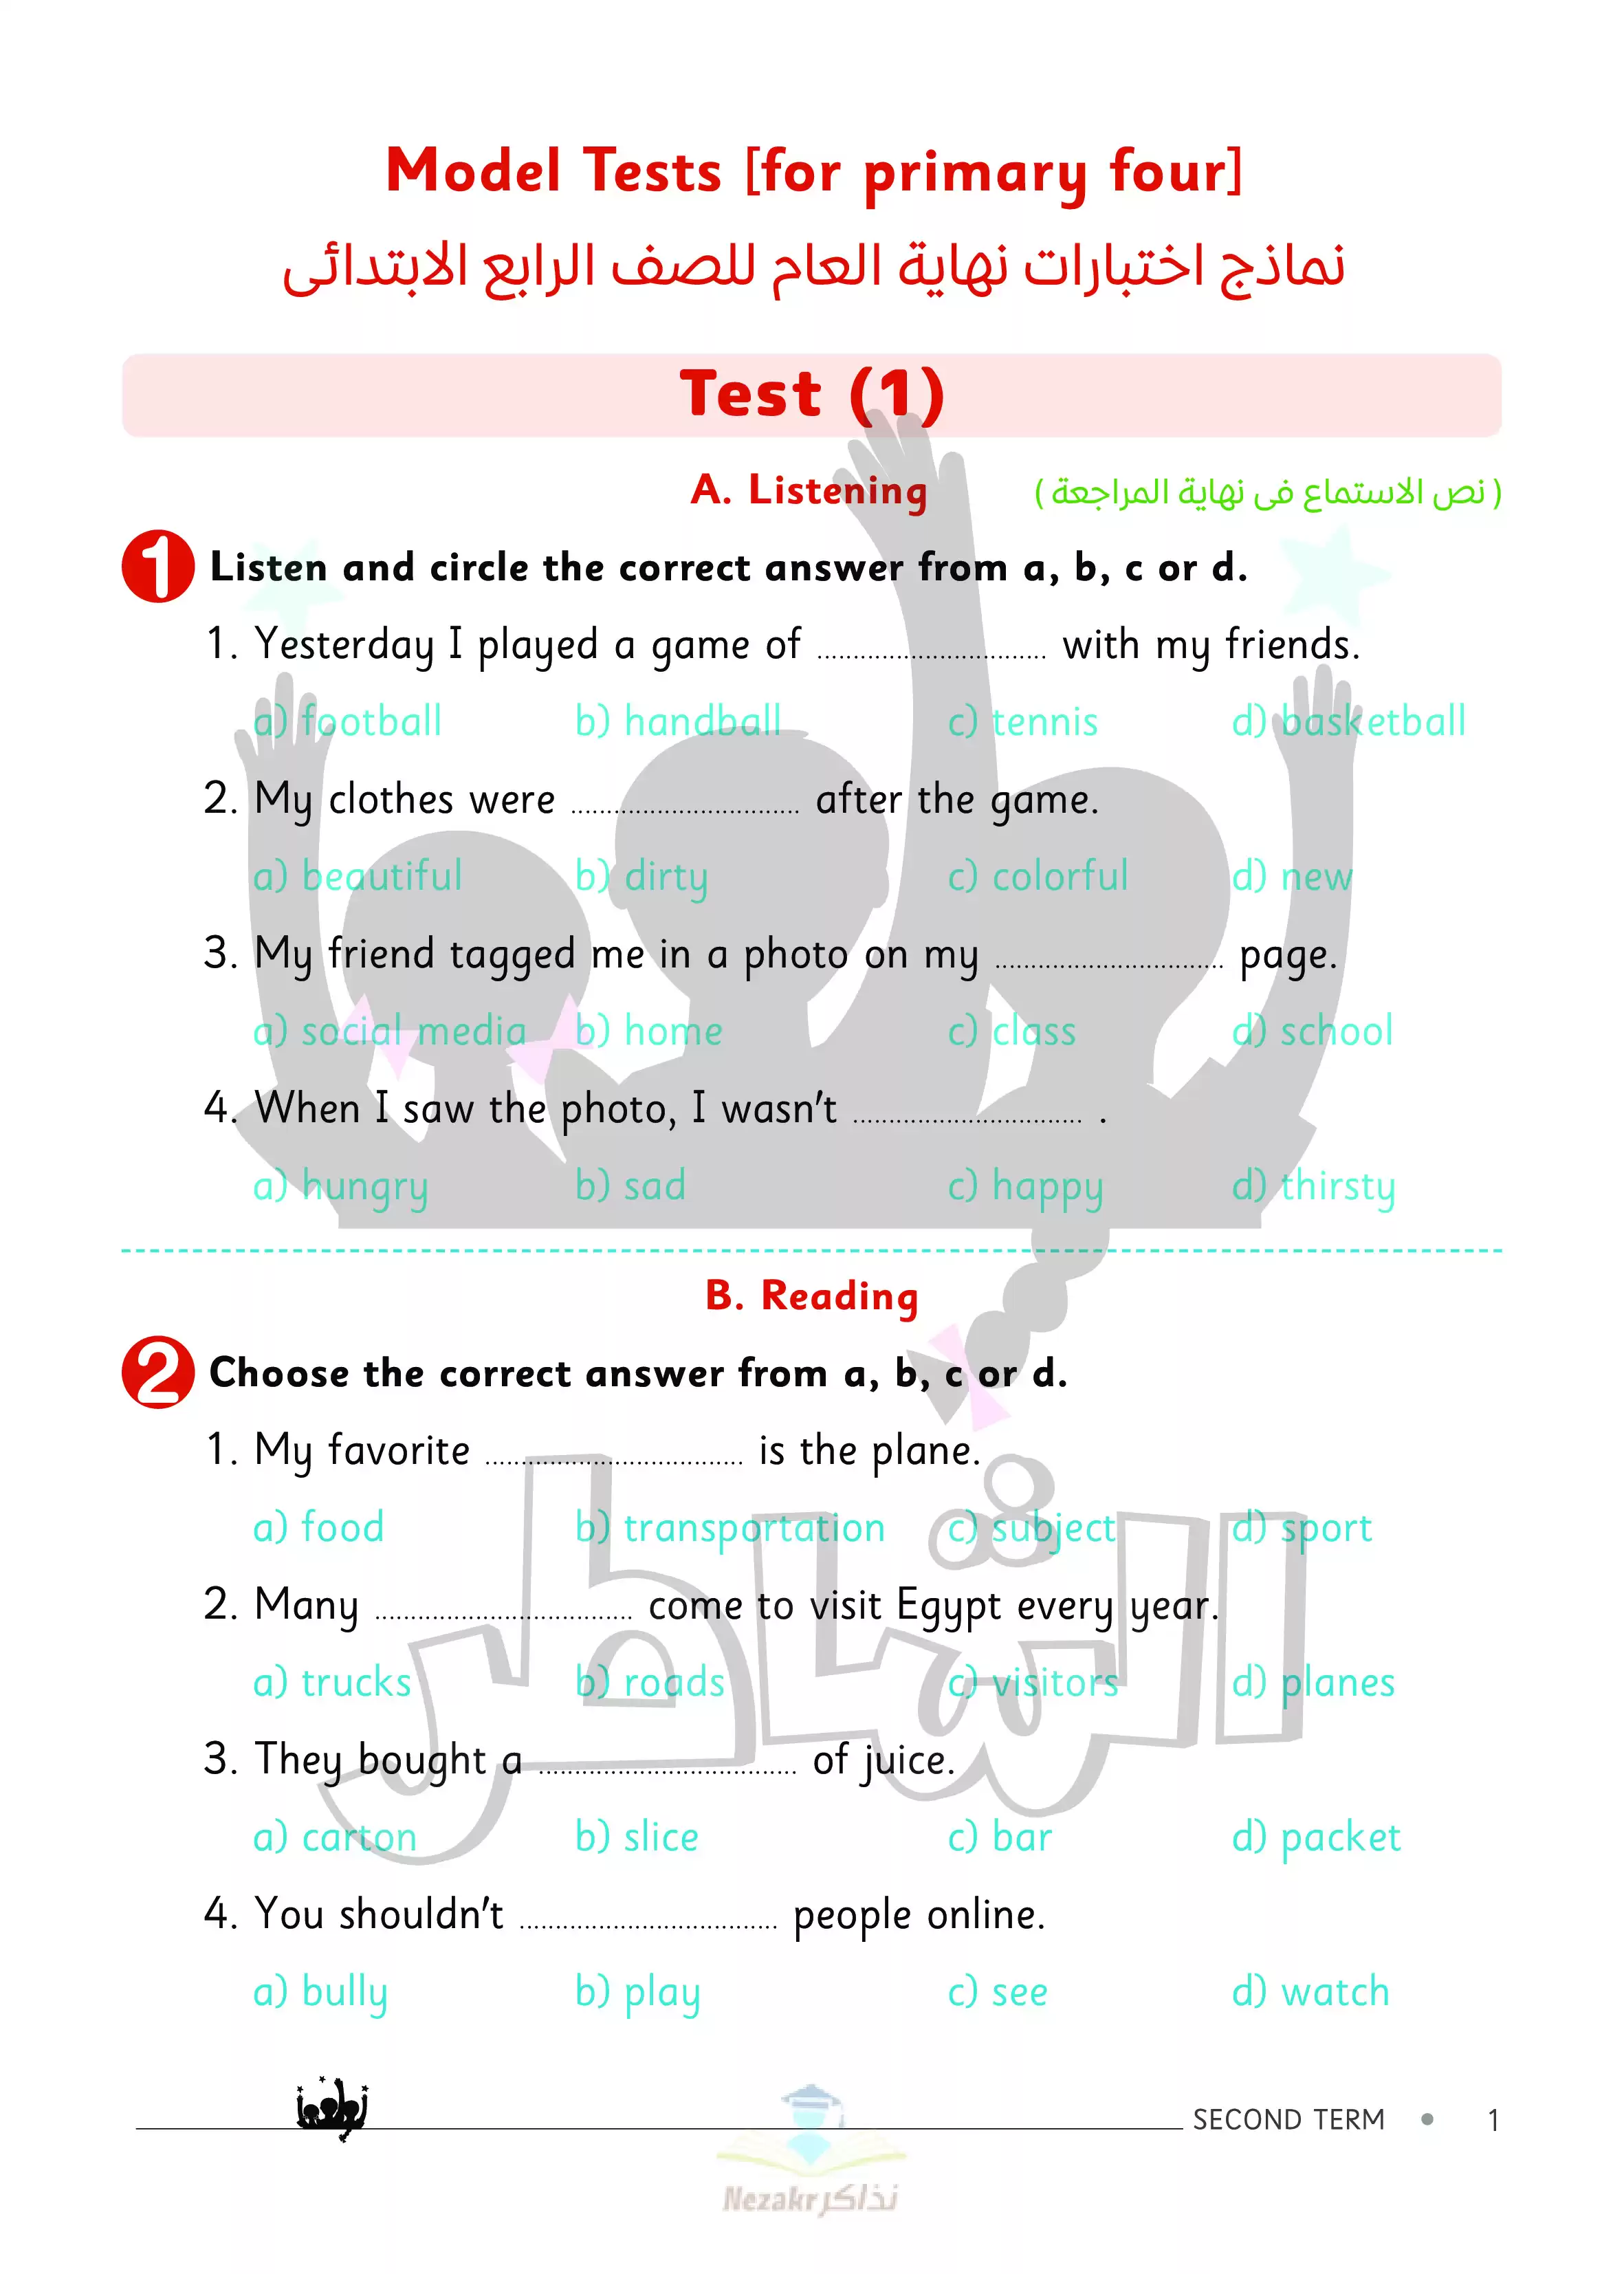 تحميل اختبارات الشاطر في اللغة الإنجليزية للصف الرابع الابتدائي الفصل الدراسي الثاني